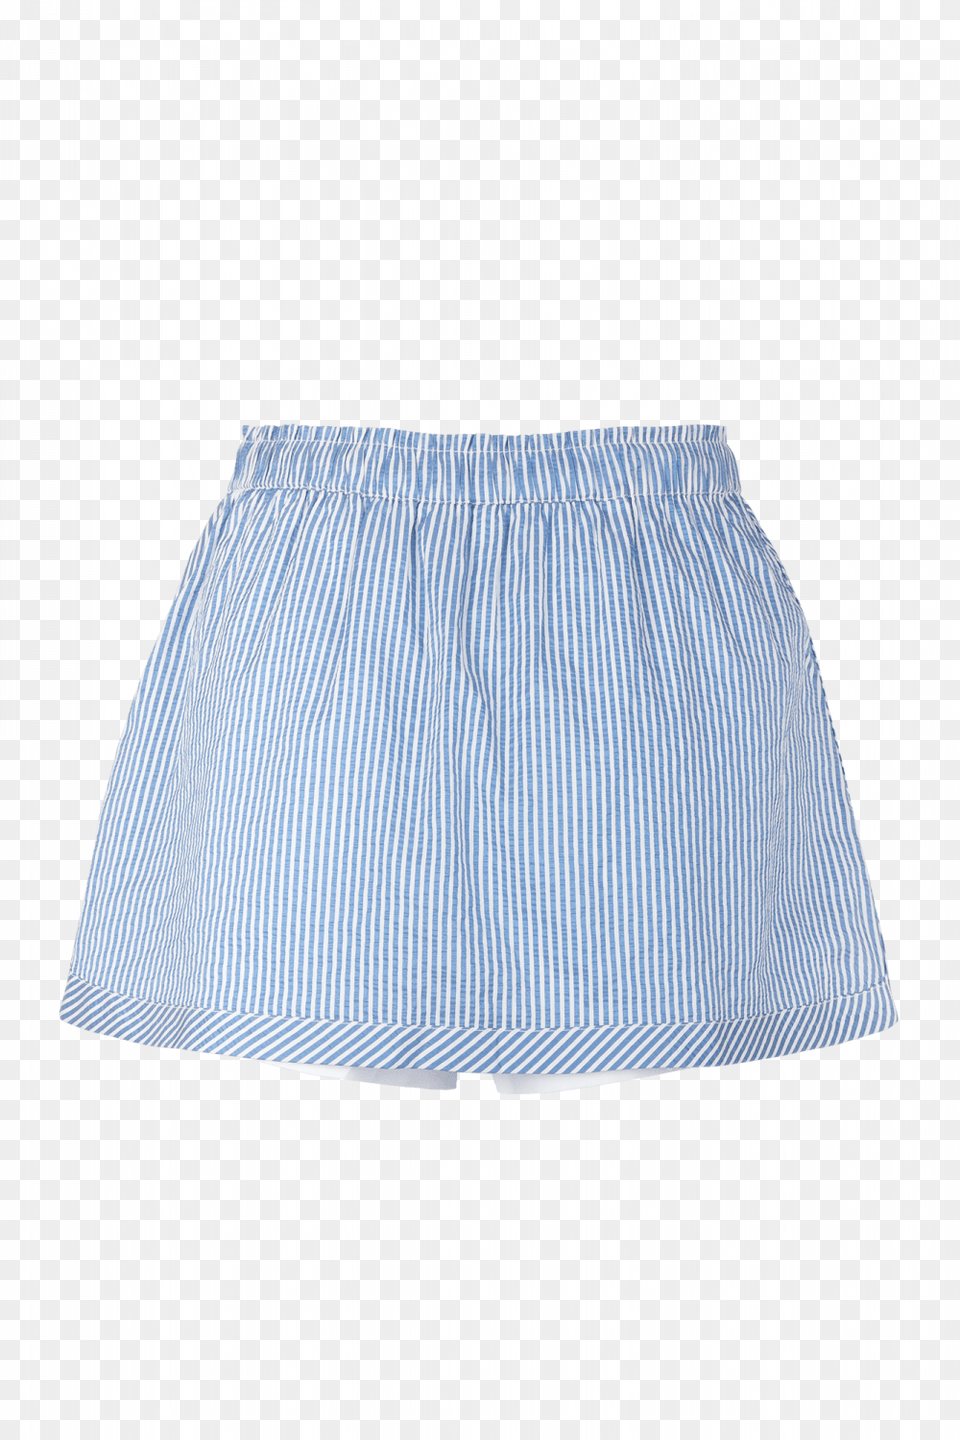 Miniskirt, Clothing, Shorts, Skirt Png Image